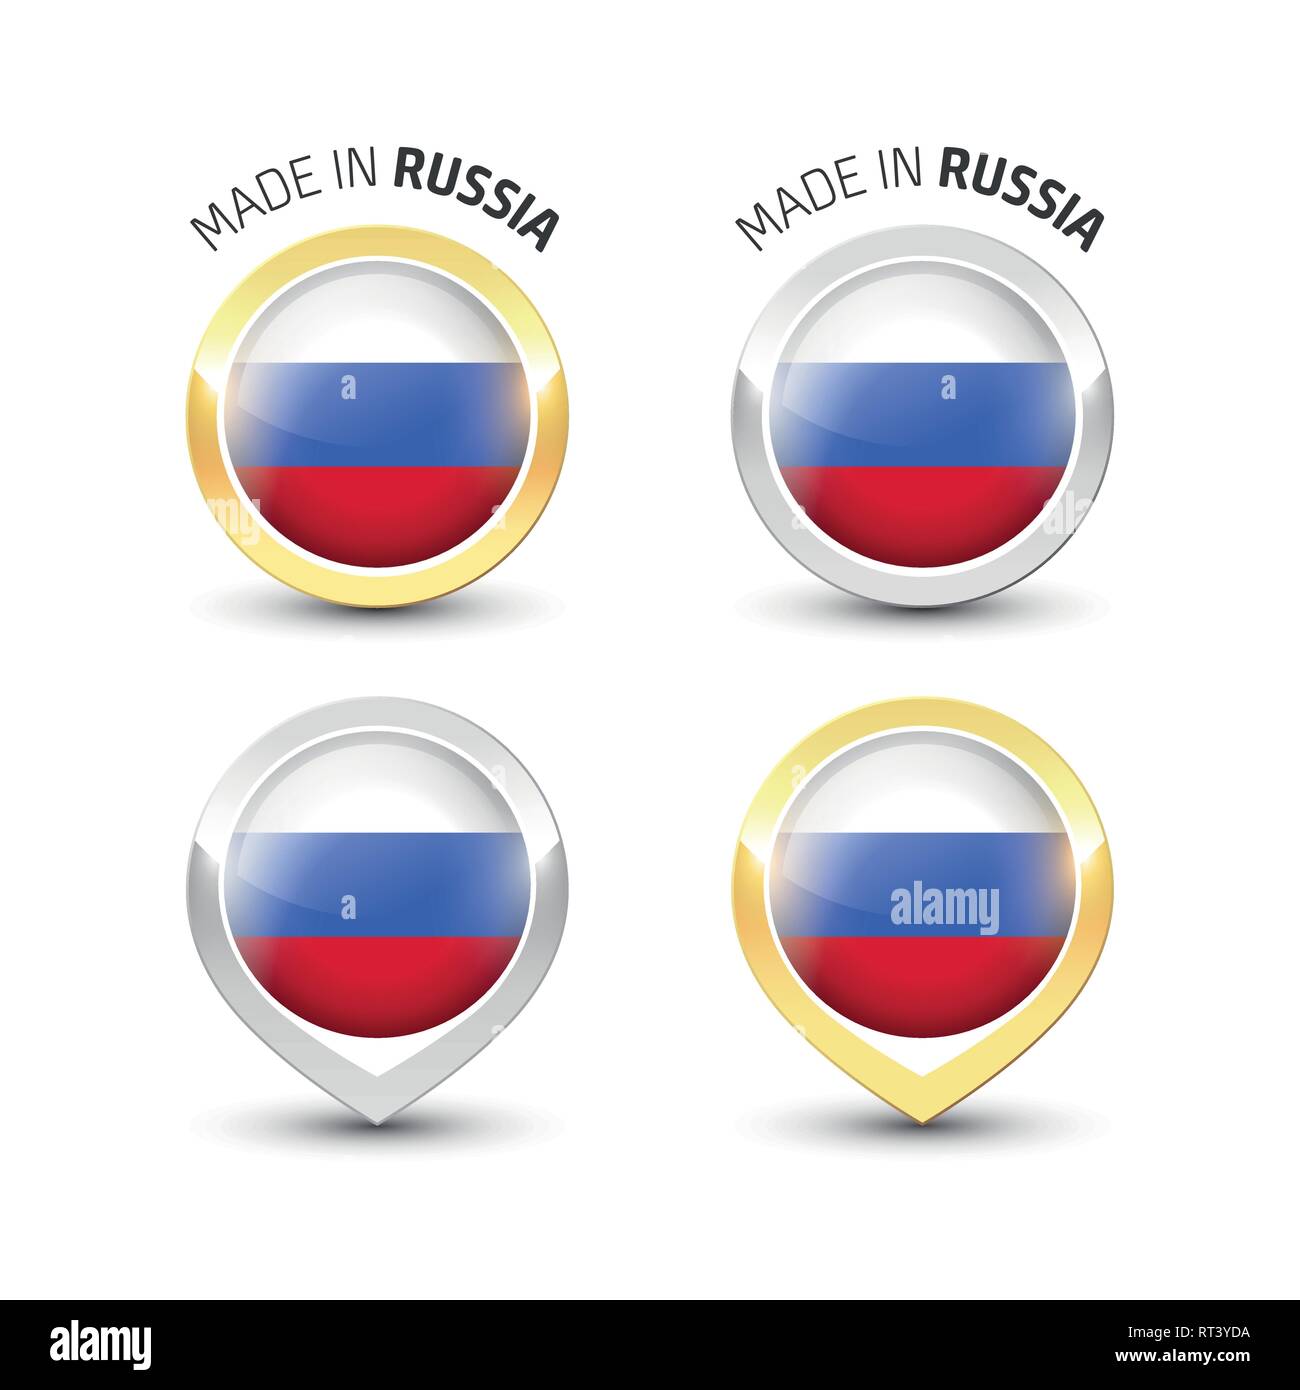 Realizzata in Russia - etichetta di garanzia con la bandiera russa all'interno del turno oro e argento icone. Illustrazione Vettoriale